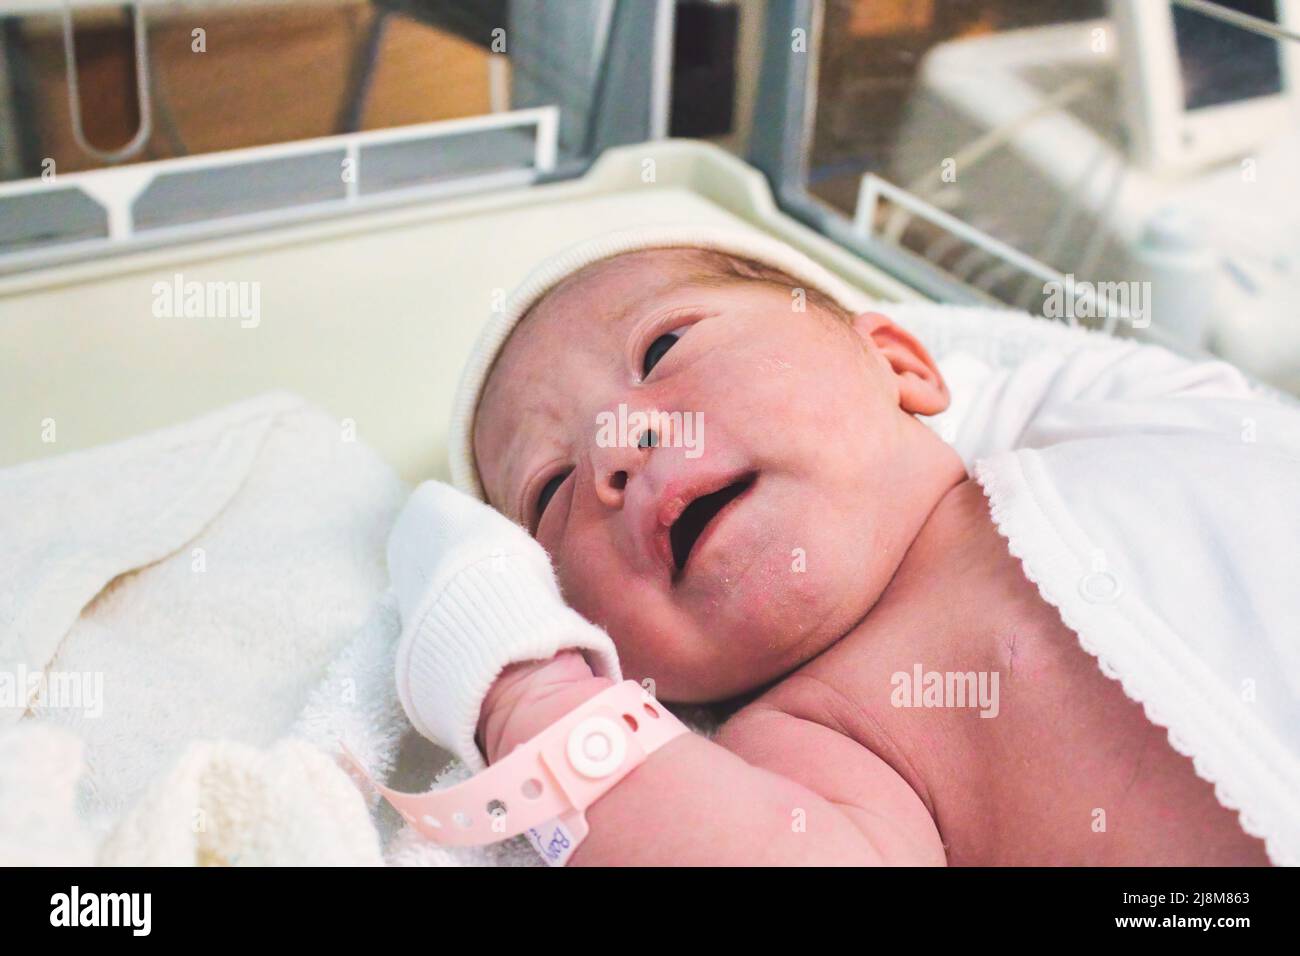 Neugeborenes Mädchen, das gerade im Krankenhaus auf der Entbindungsstation mit einem Plastikschild am Handgelenk geboren wurde Stockfoto